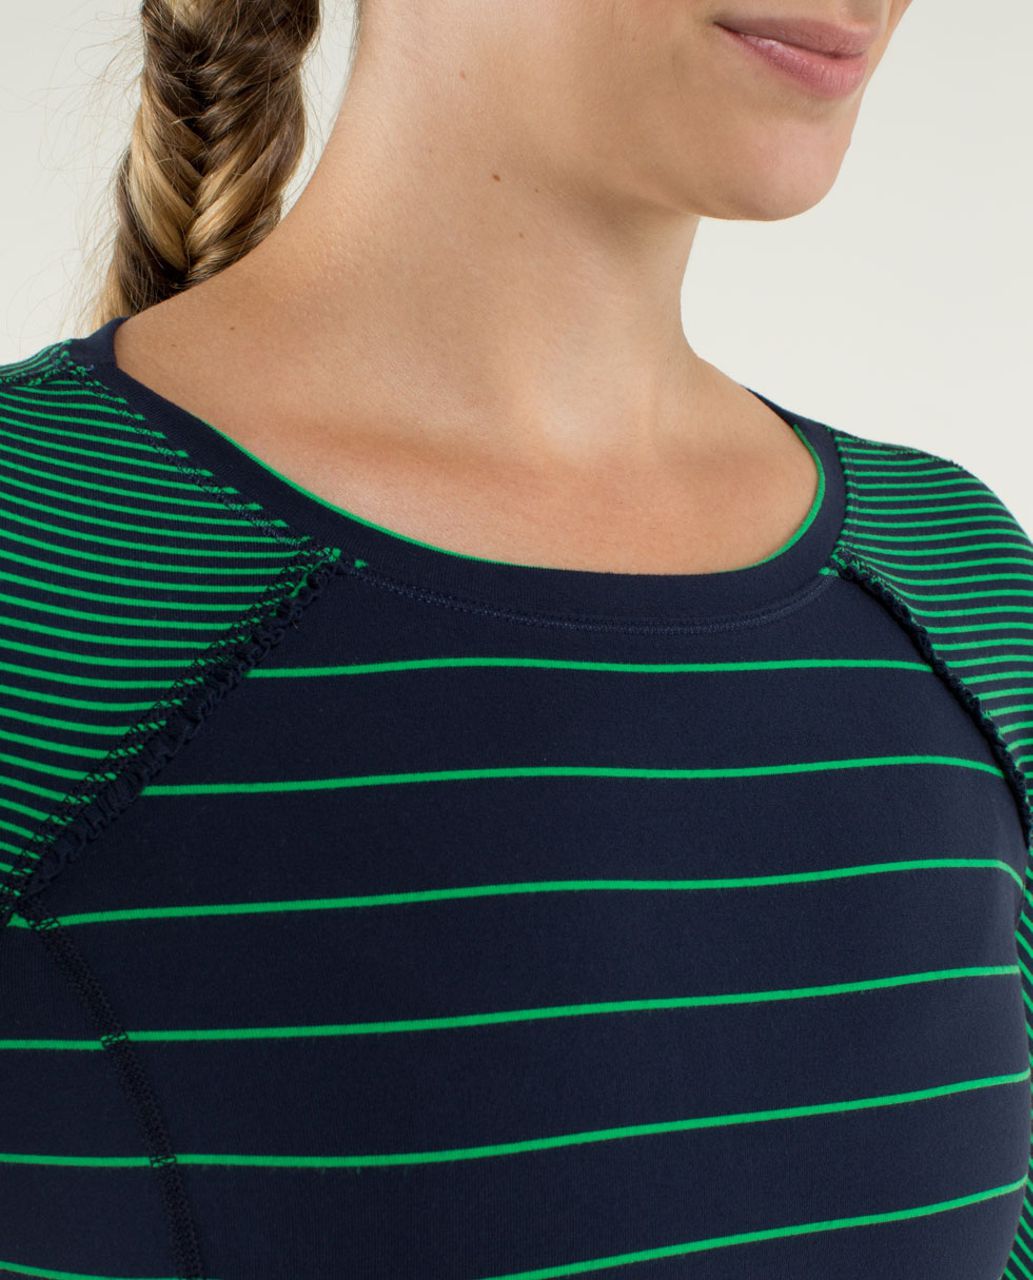 Lululemon Full Tilt Long Sleeve - Slalom Stripe Inkwell / Hyper Stripe Green Bean / Inkwell